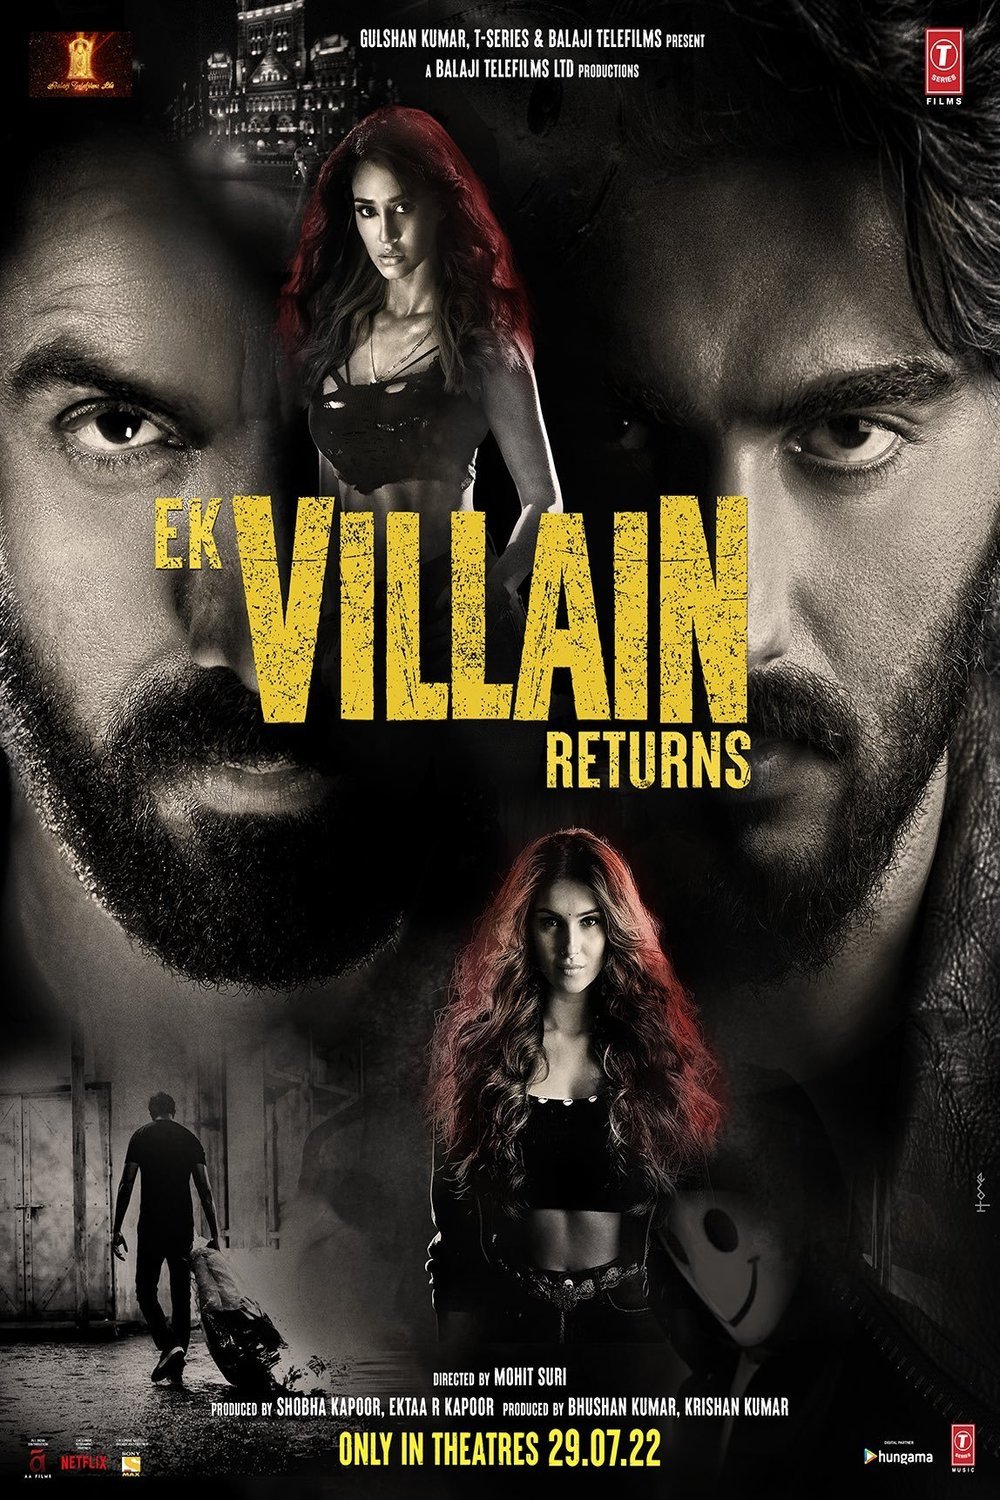 Hindi poster of the movie Ek Villain Returns